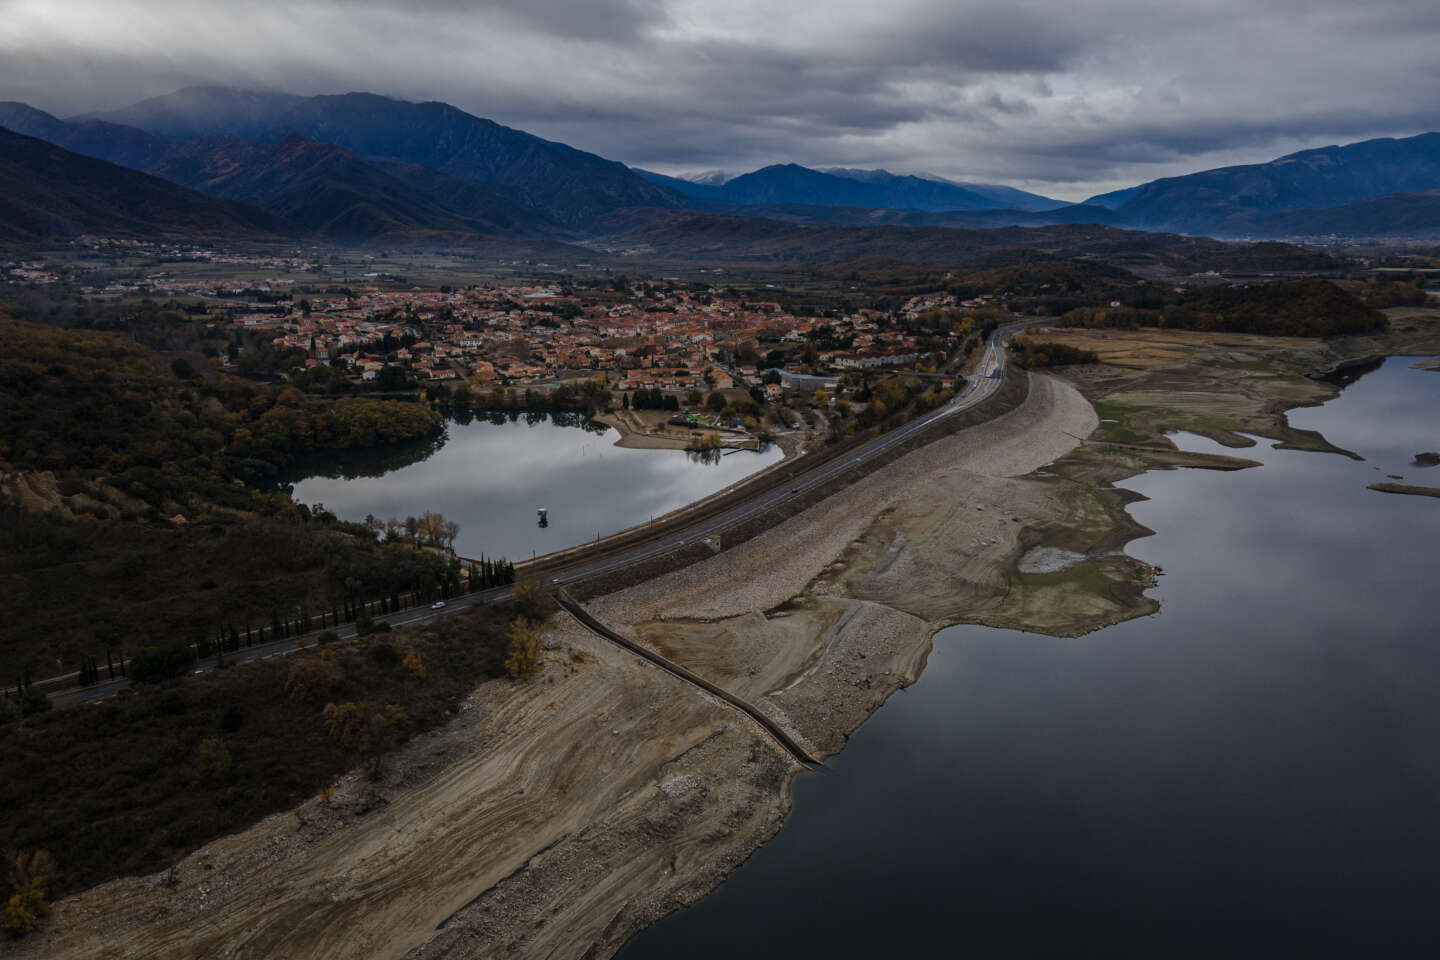 Sécheresse : situation « préoccupante » dans les Pyrénées-Orientales, légère dégradation du niveau des nappes phréatiques